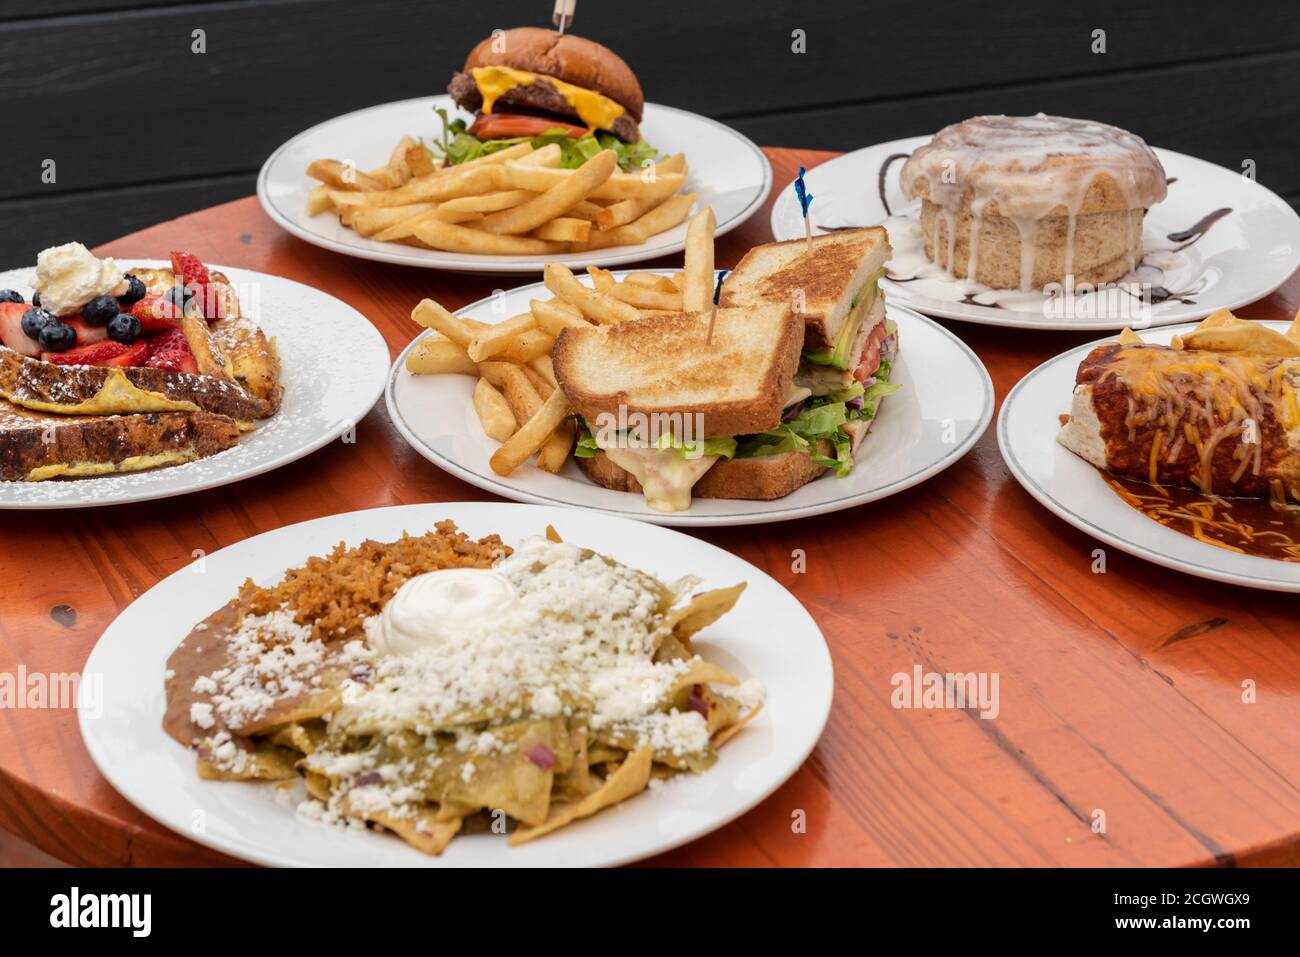 Un banchetto pieno di piatti a buffet tra cui scegliere per colazione, pranzo o cena come una scelta deliziosa. Foto Stock